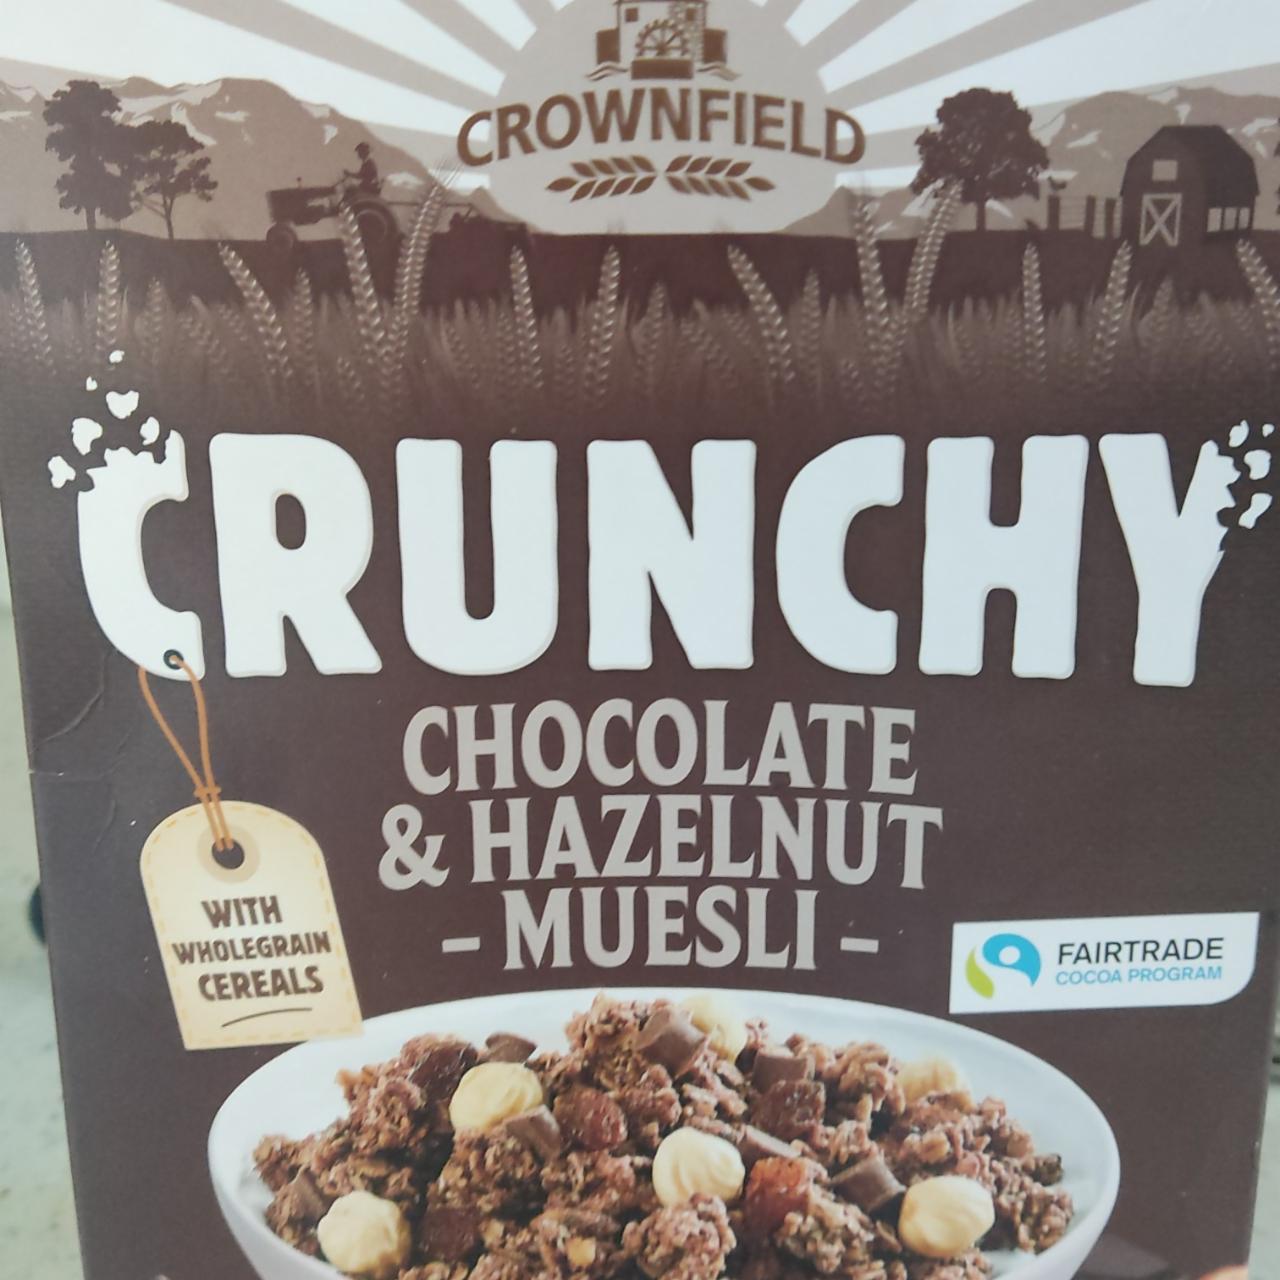 Фото - мюсли crunchy с шоколадом и фундуком Crownfield